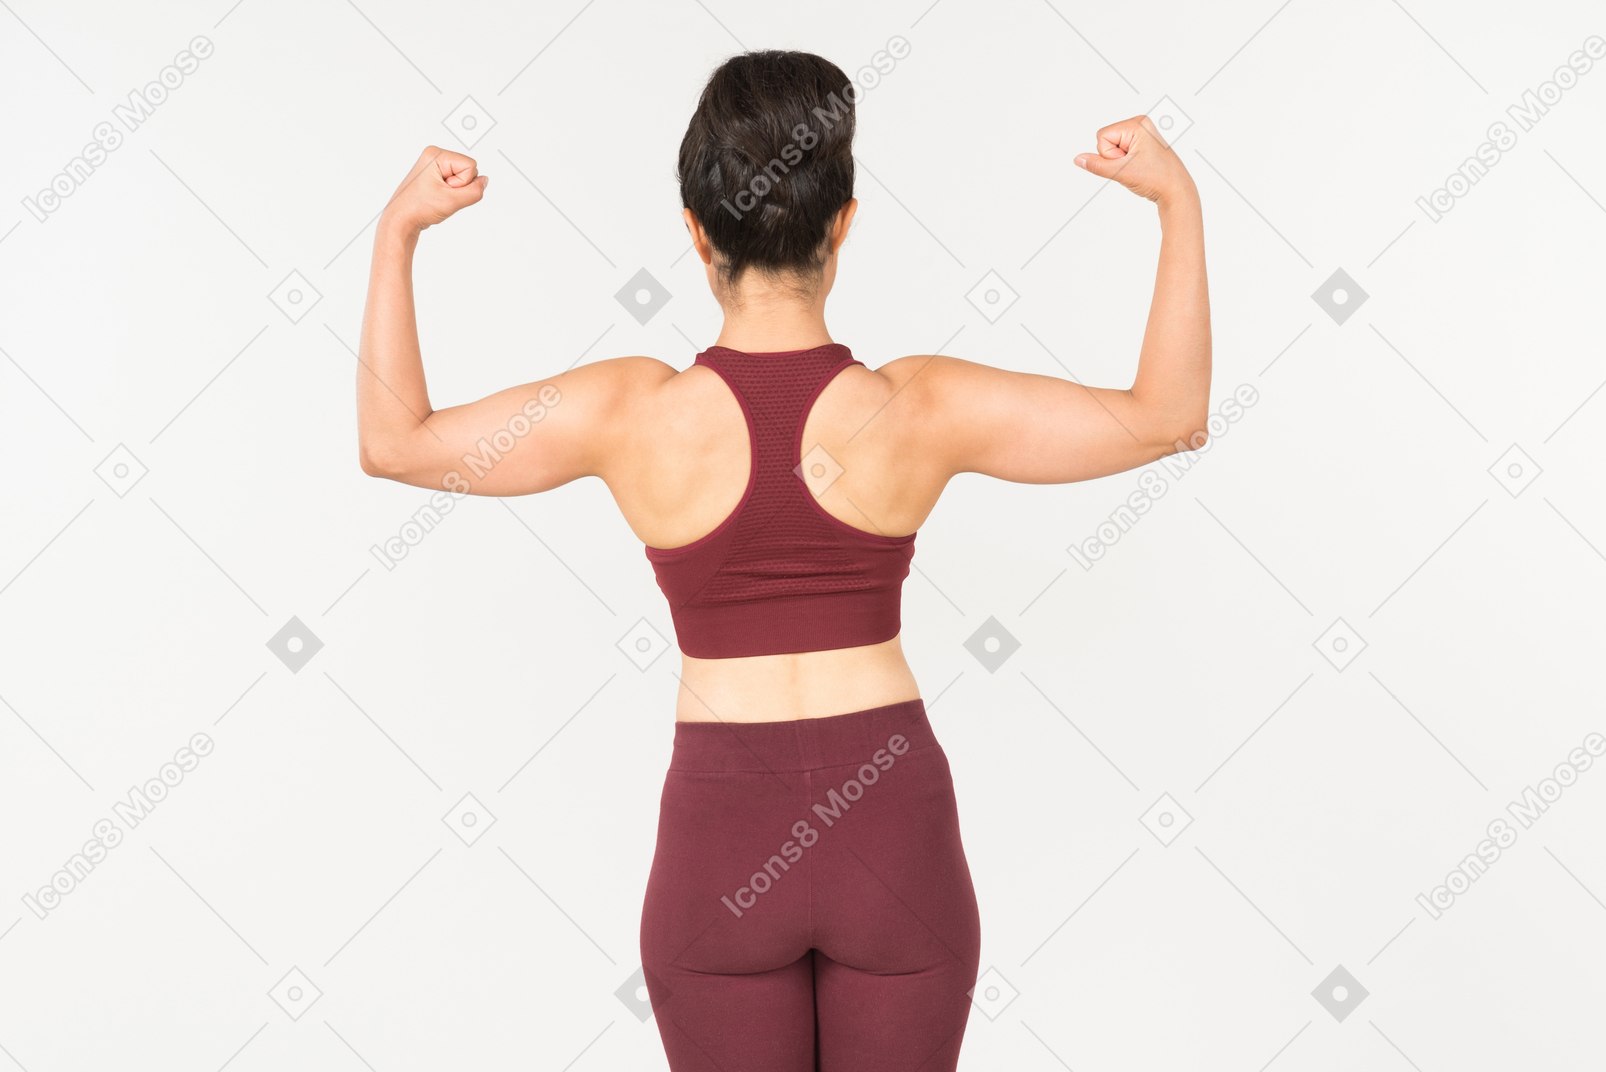 Jovem indiana no sportswear mostrando os músculos e em pé de volta para a câmera